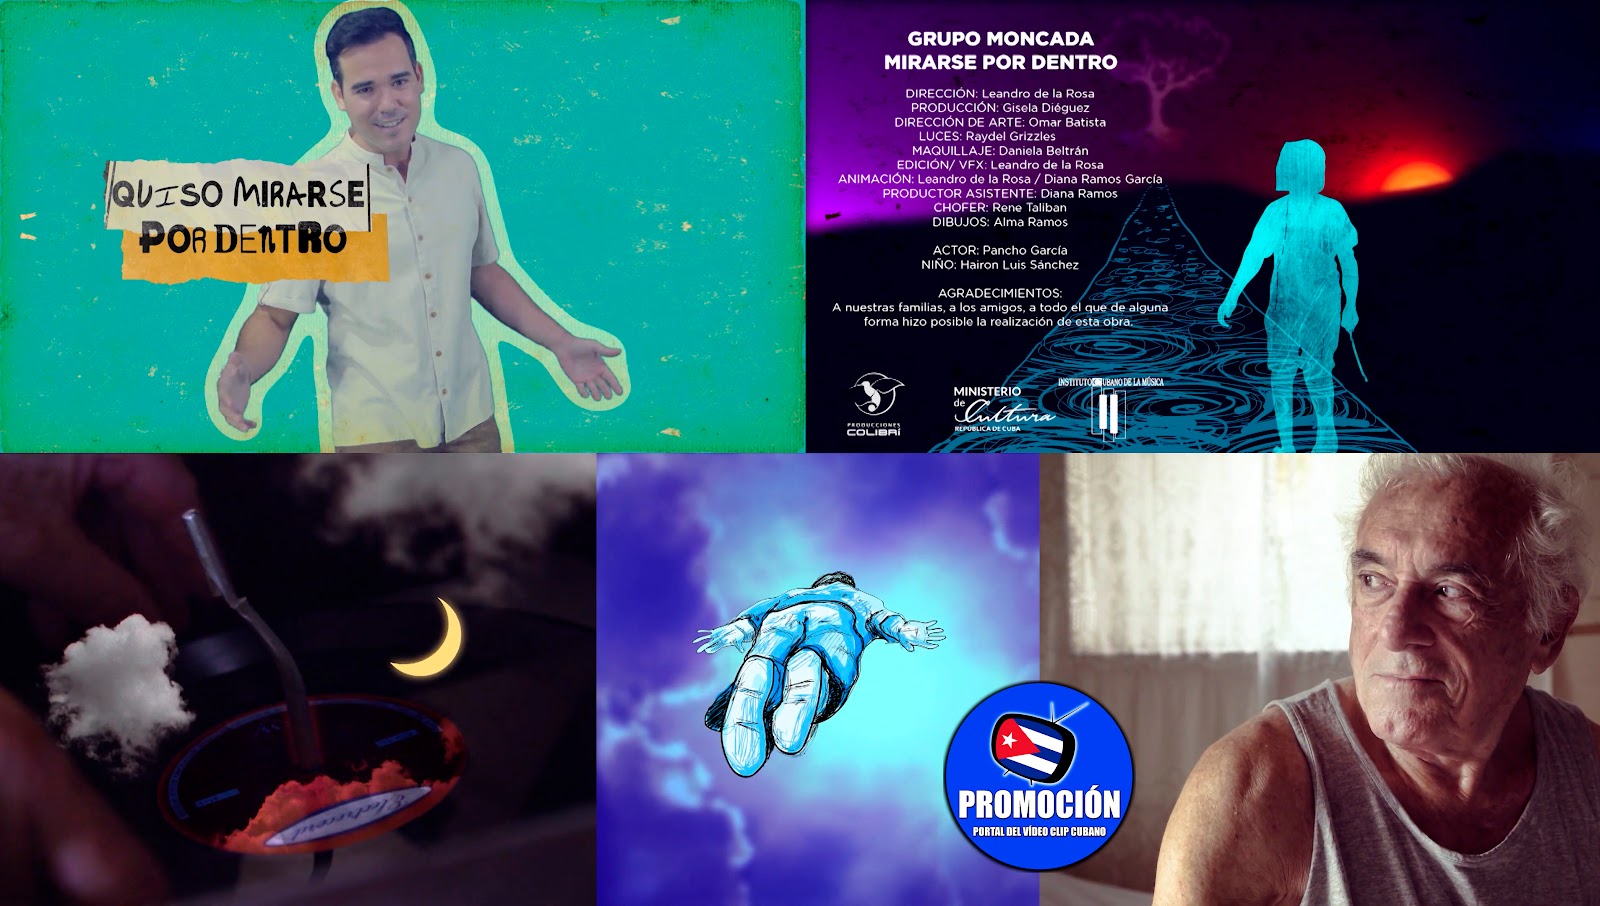 Grupo Moncada - ¨Mirarse por dentro¨ - Director: Leandro de la Rosa. Portal Del Vídeo Clip Cubano. Música pop cubana. CUBA.